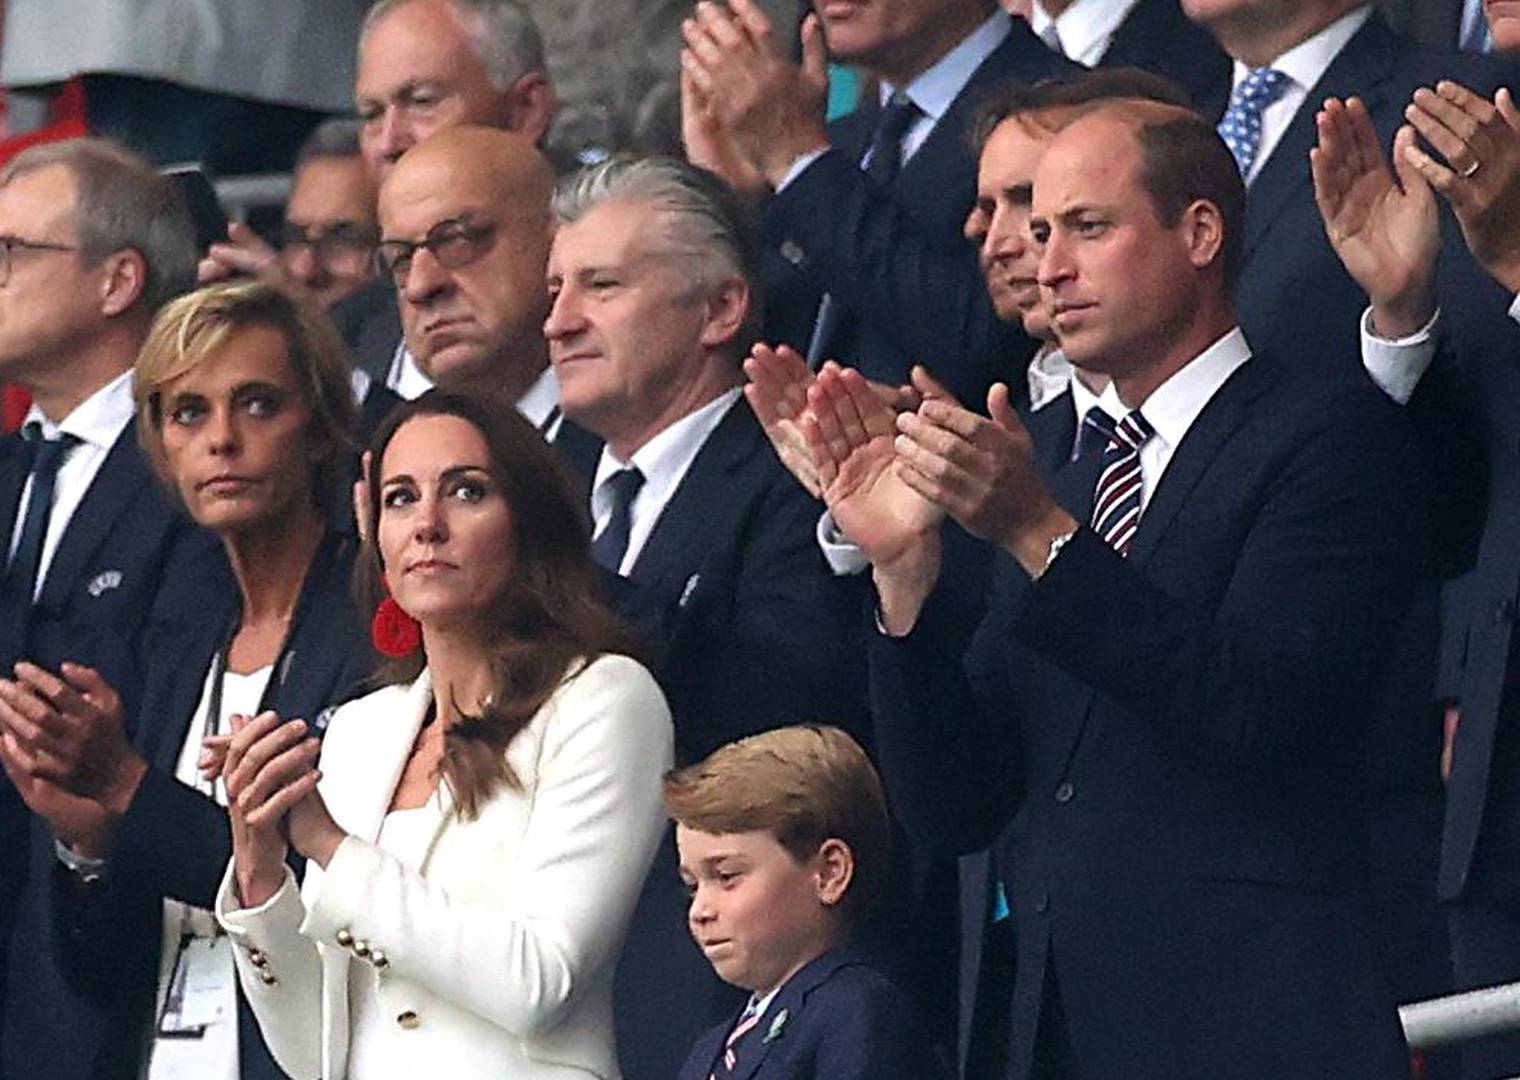 Šuker na Wembleyju utakmicu prati pored kraljevne, dobio mjesto uz princa Williama i Kate